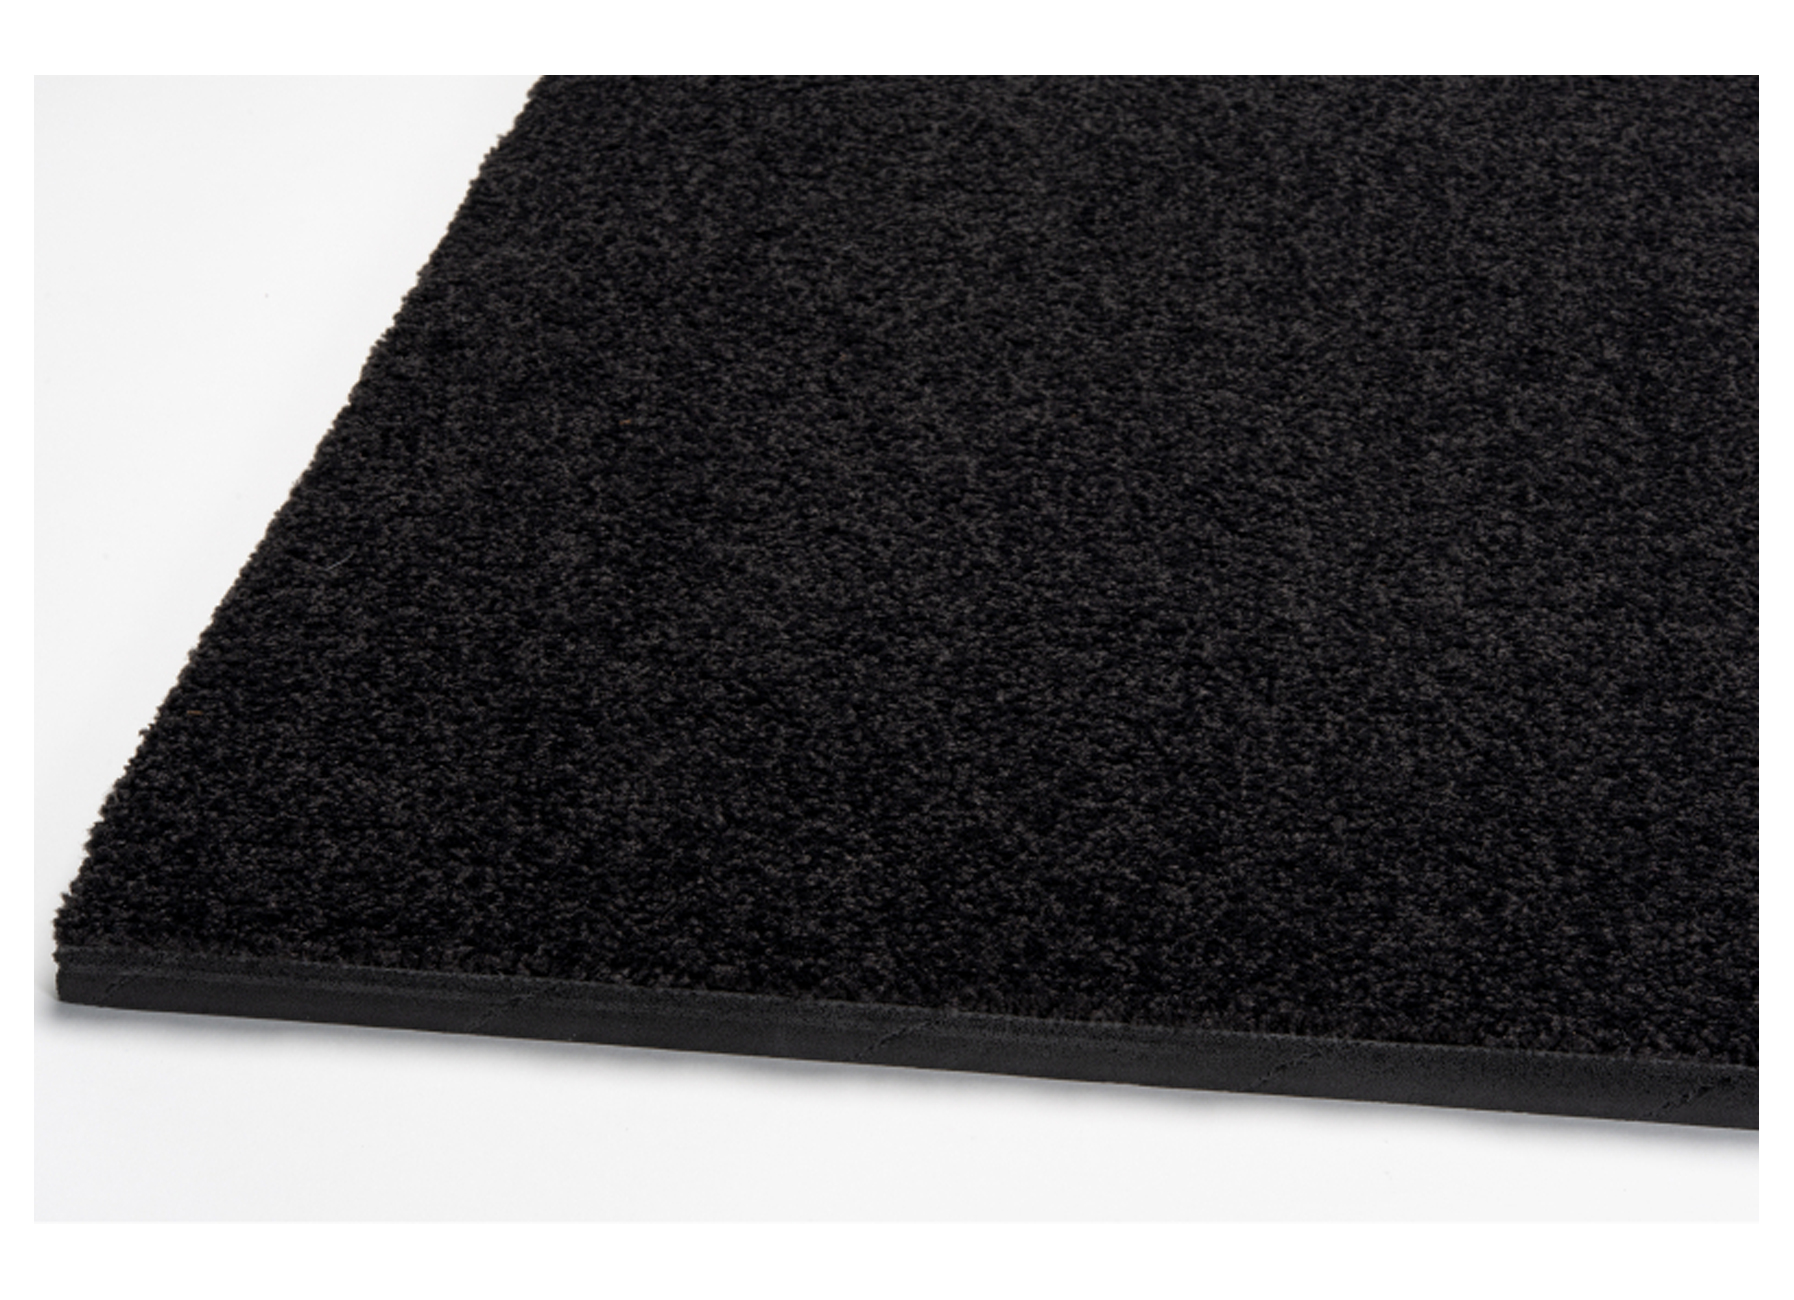 Inkommat Polyframe - tegels toebehoren - toebehoren en afwerking voor plaatsen tegels - vloermatkaders matten - rosco inkommat